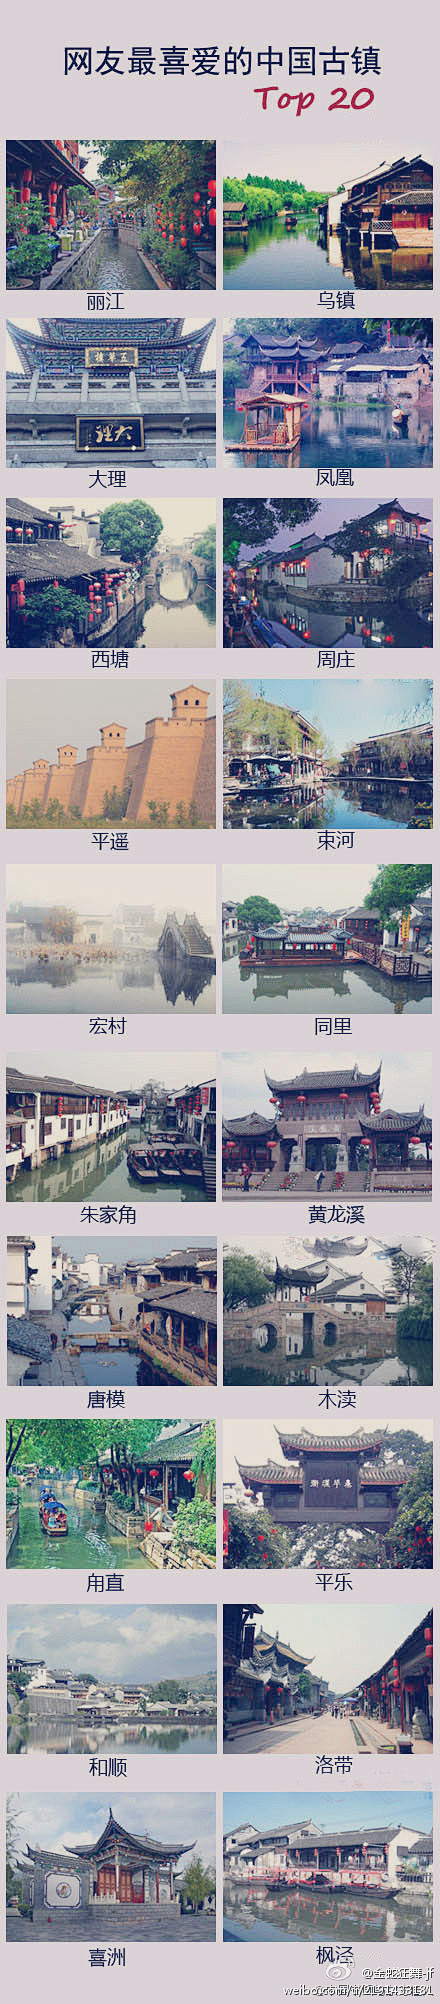 金蛇狂舞-jf中国20名古镇---丽江、...